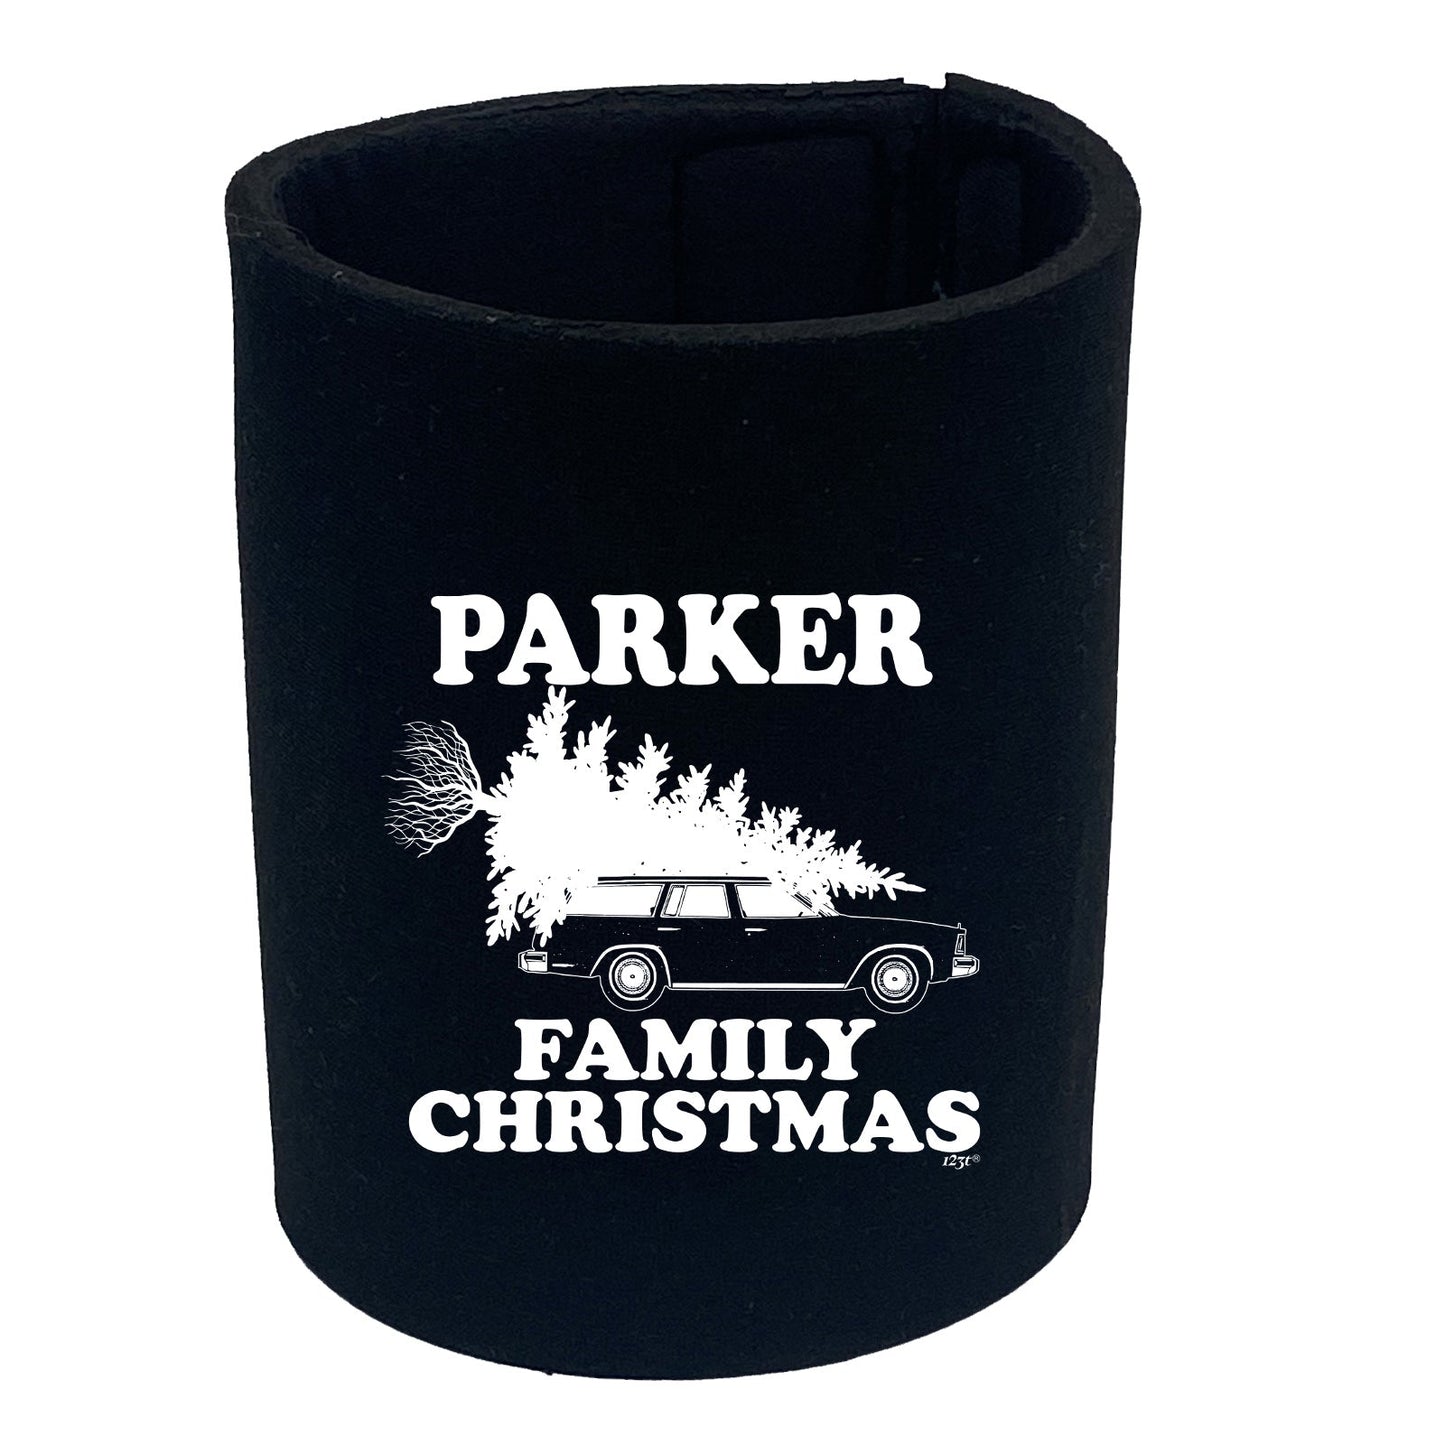 Family Christmas Parker - Funny Stubby Holder